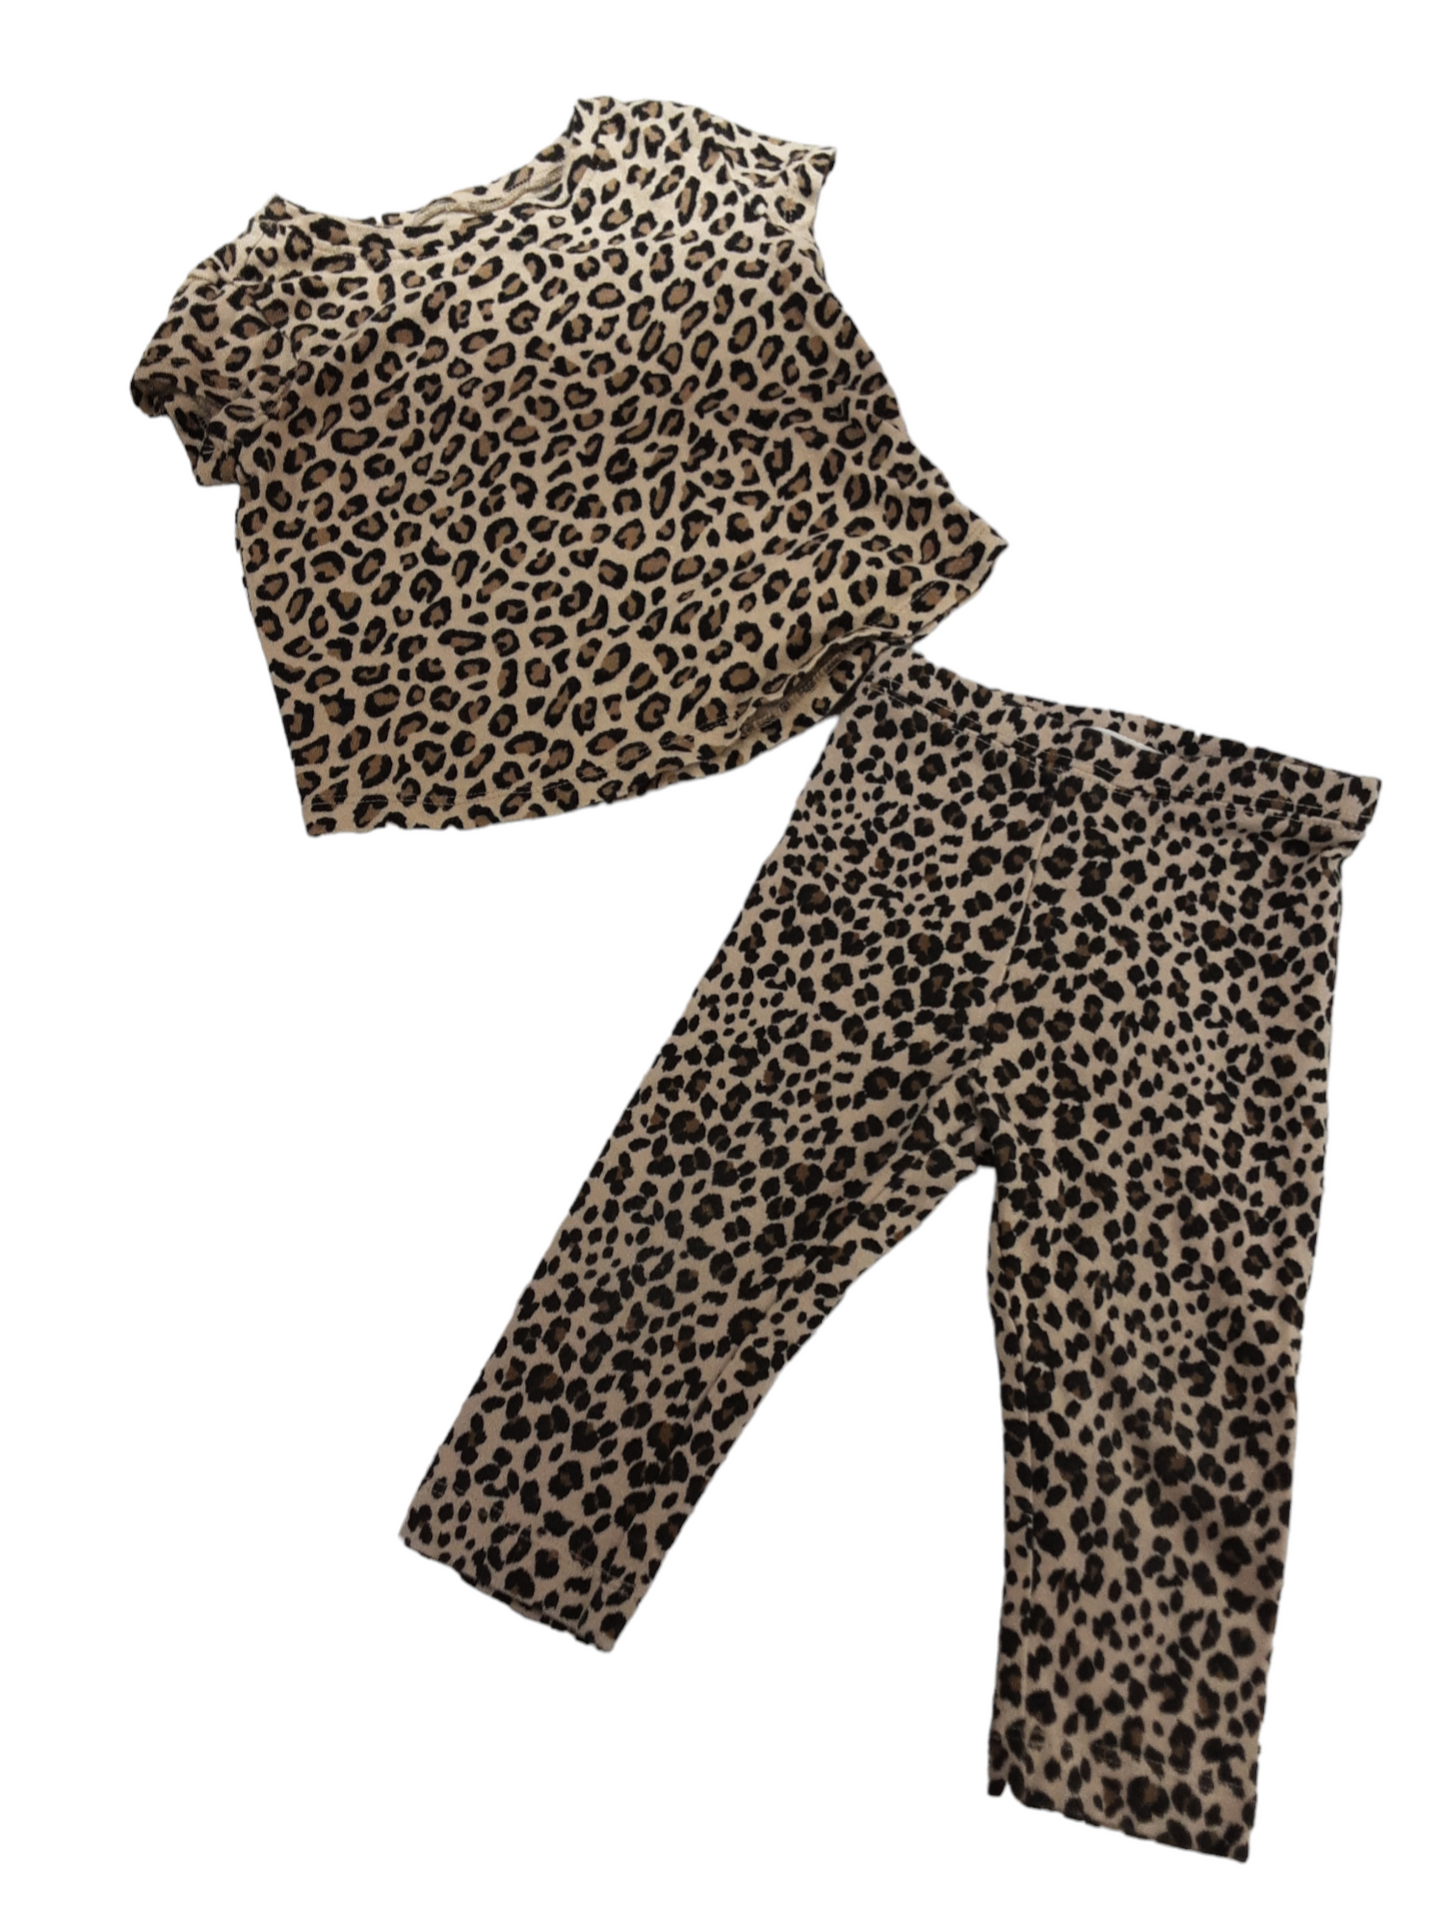 Leopard print set size 12-24months